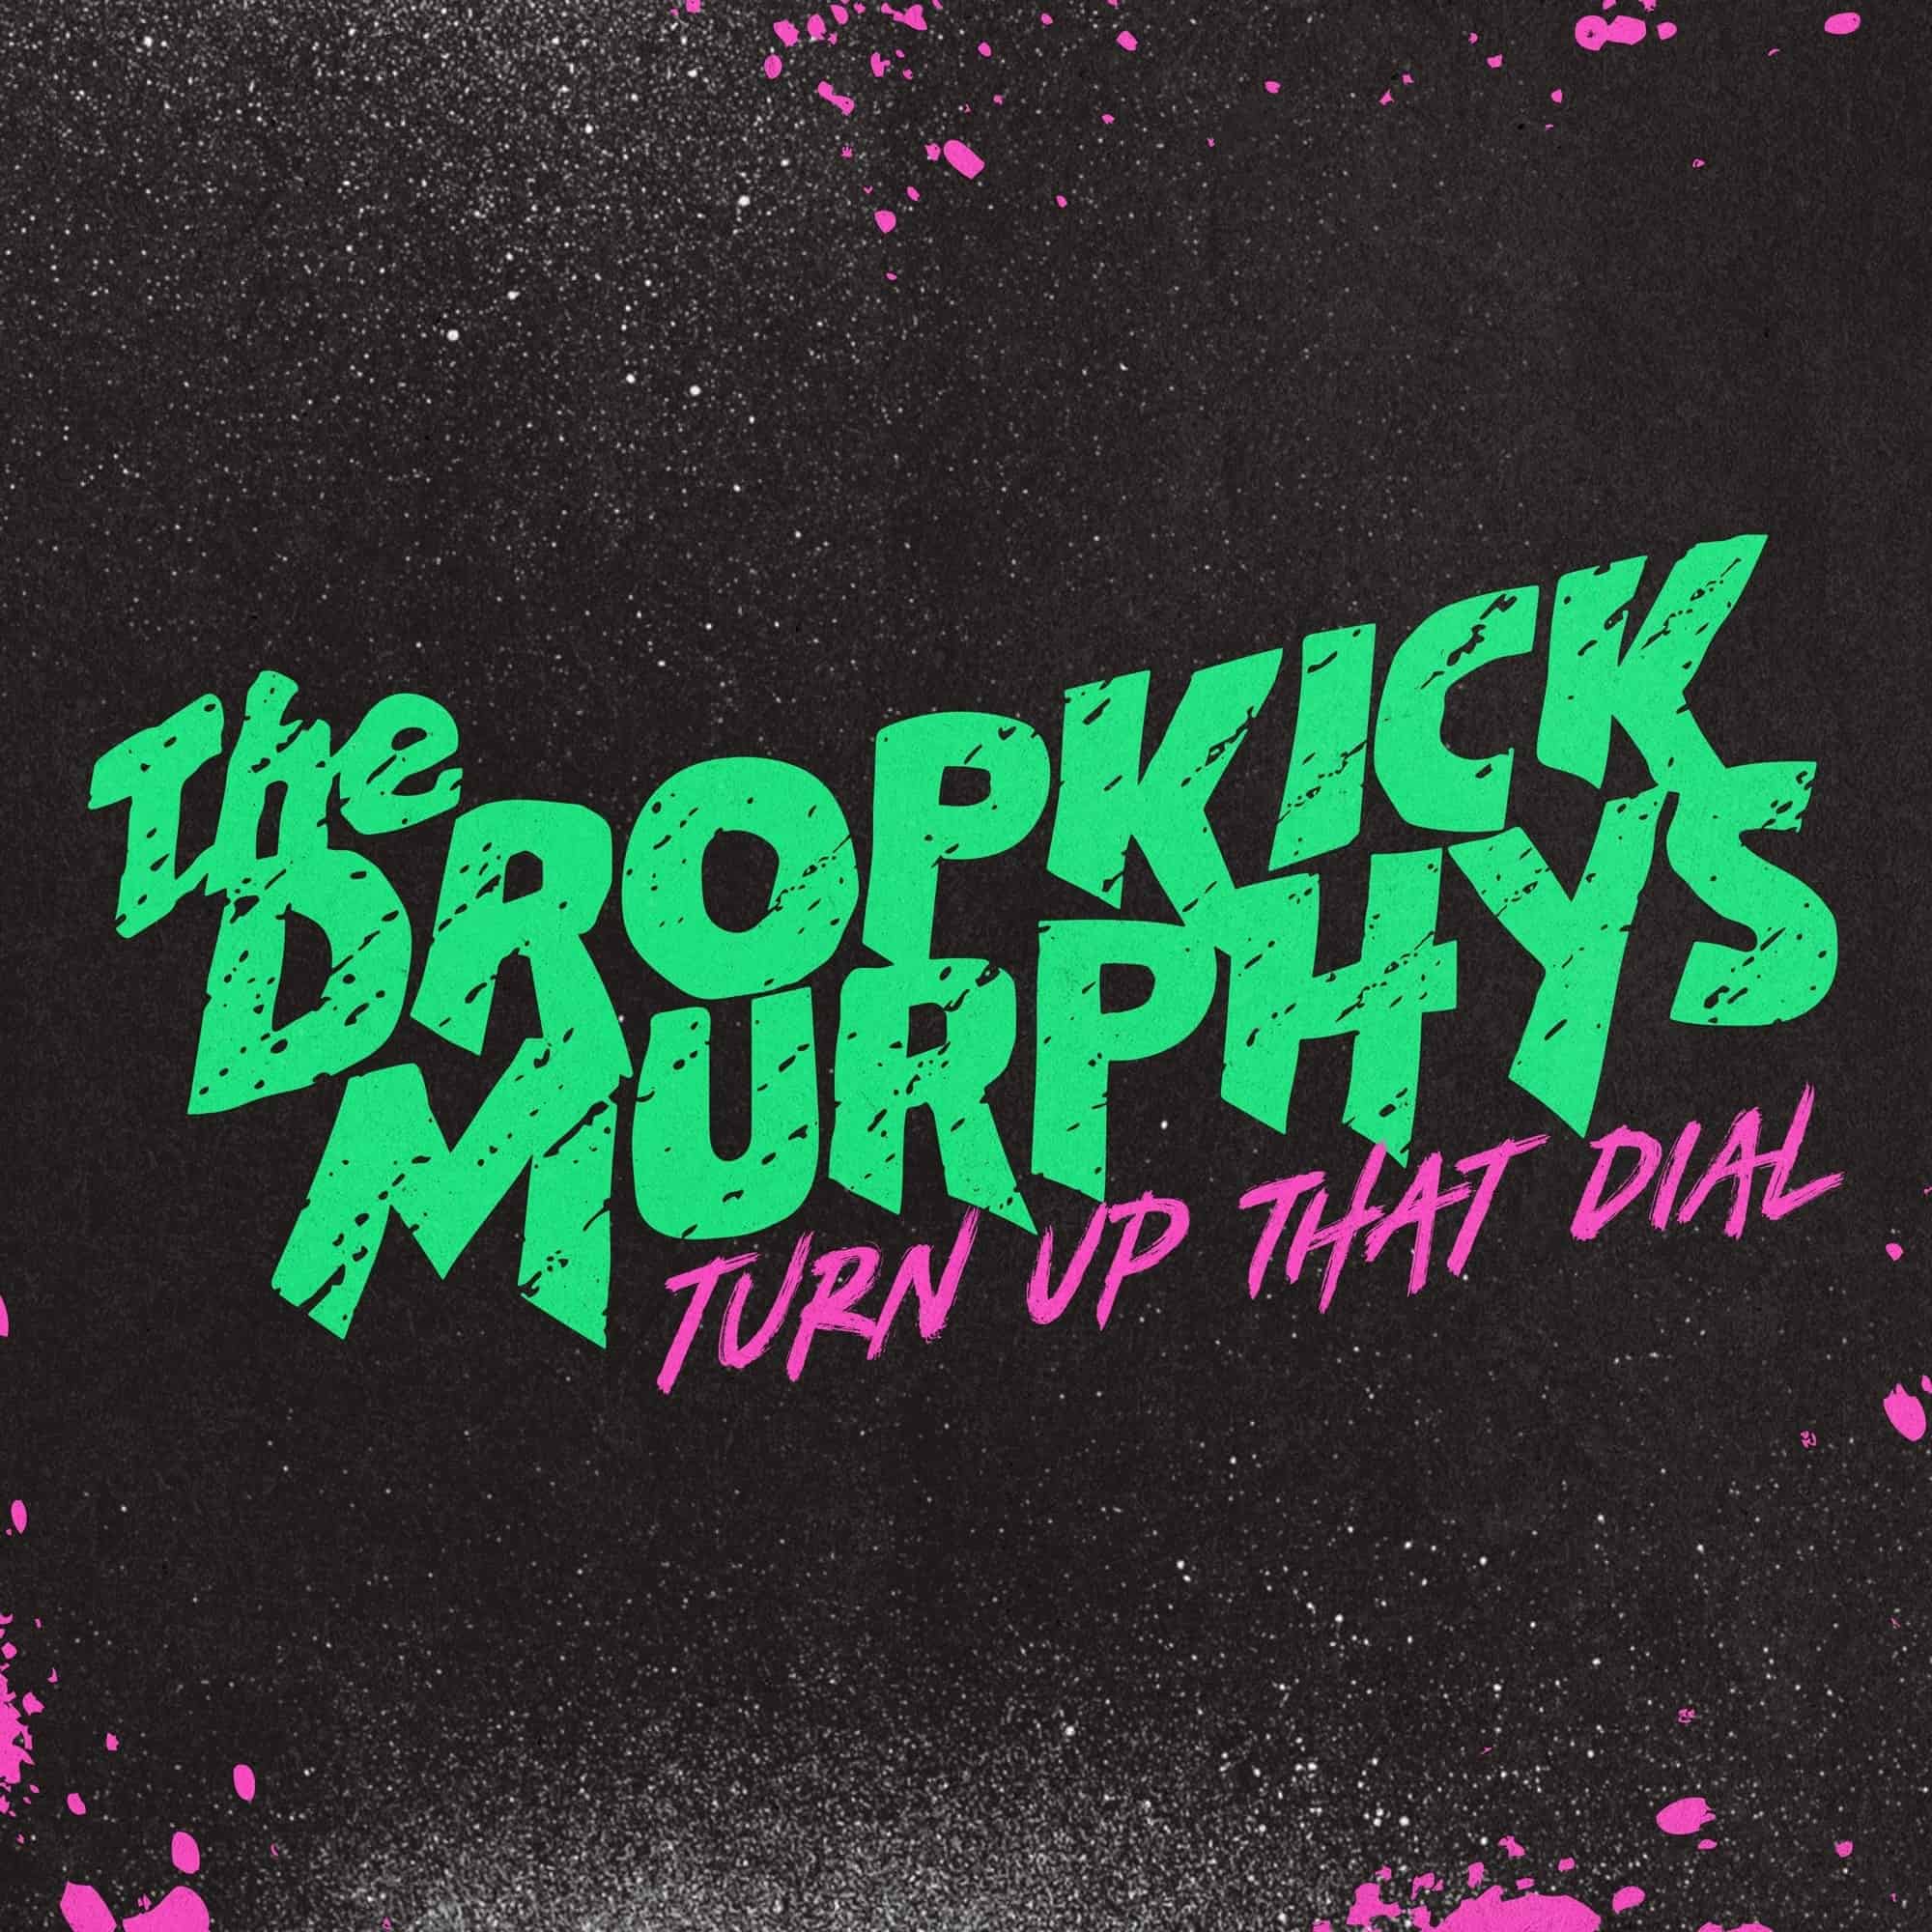 DROPKICK-MURPHYS-annonce-enfin-son-nouvel-album-4-001.jpg